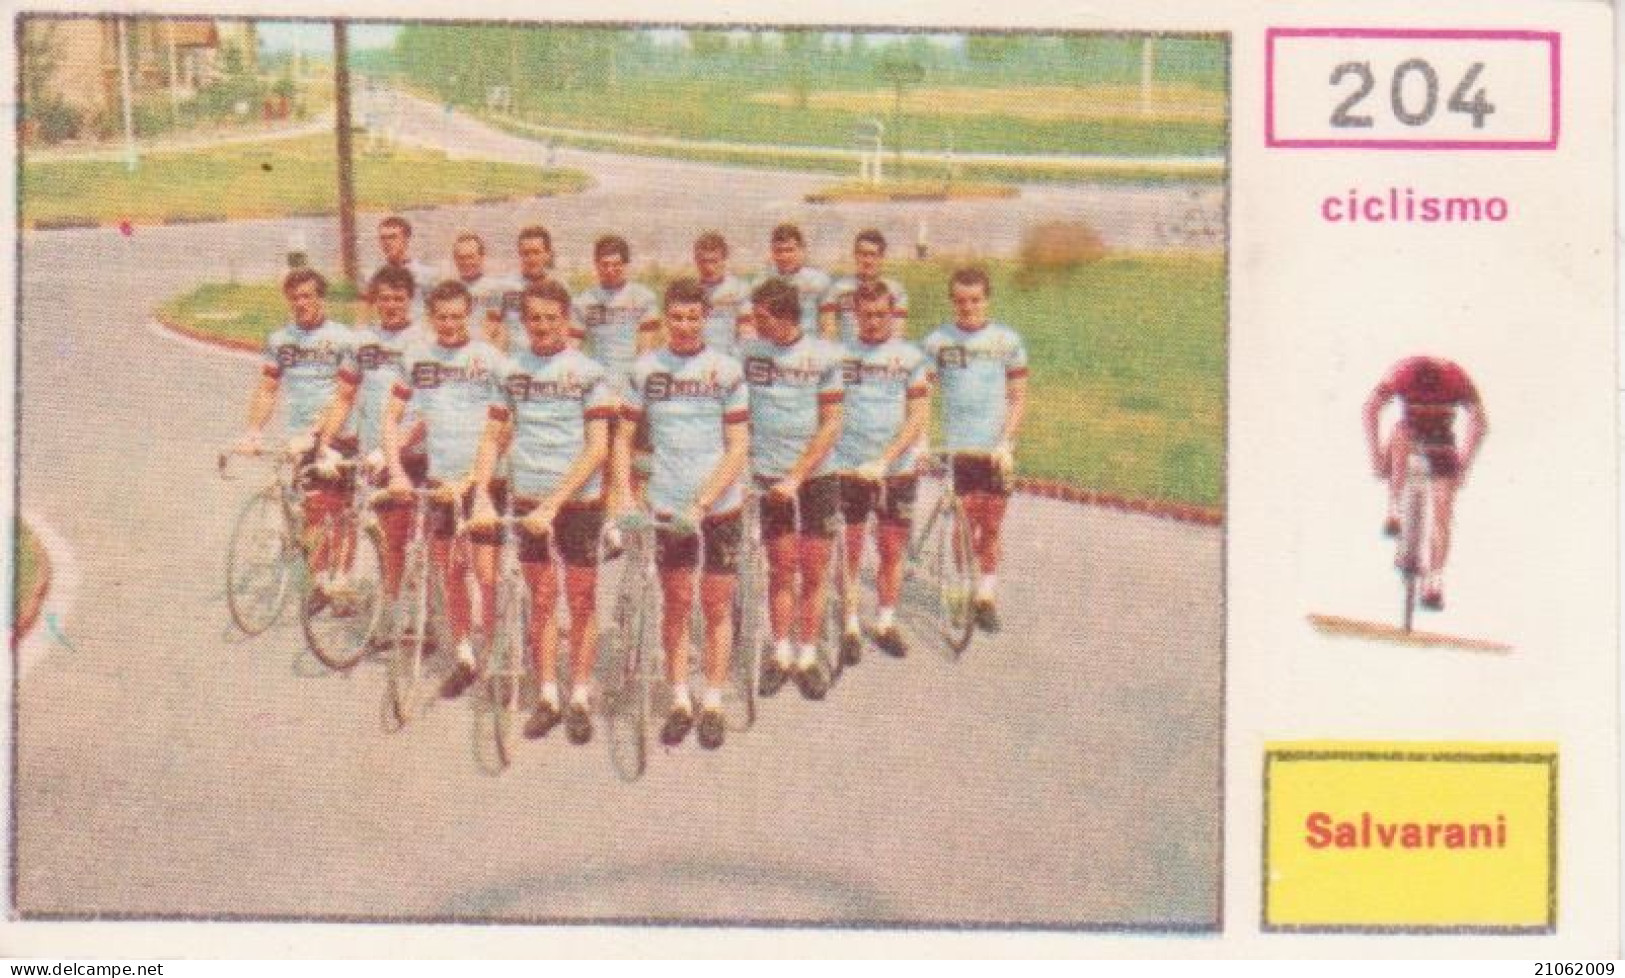 204 CICLISMO SQUADRA SALVARANI CYCLING TEAM - CAMPIONI DELLO SPORT 1967-68 PANINI STICKERS FIGURINE - Cycling